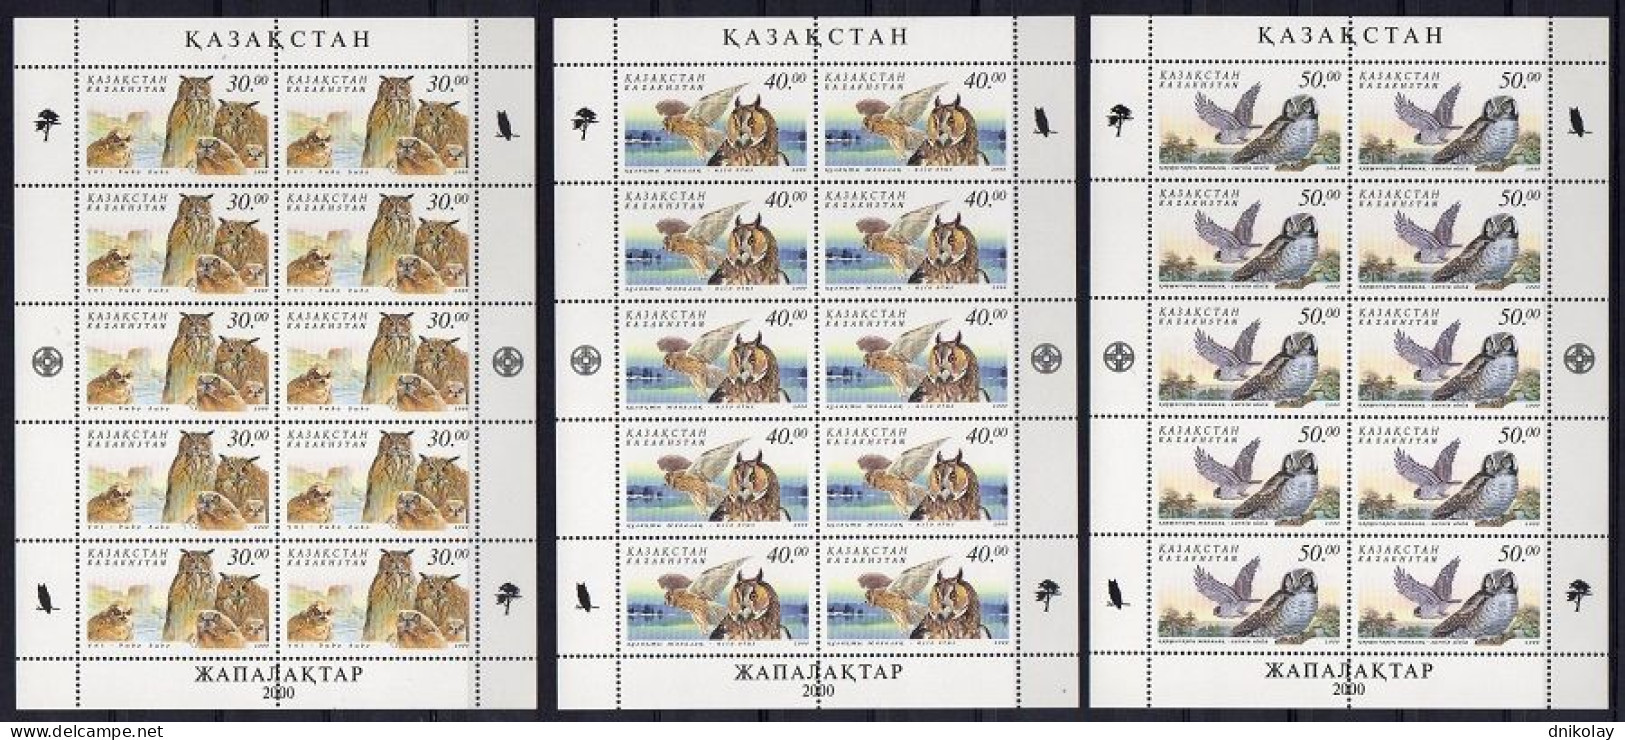 2001 326 Kazakhstan Owls MNH - Kazakhstan